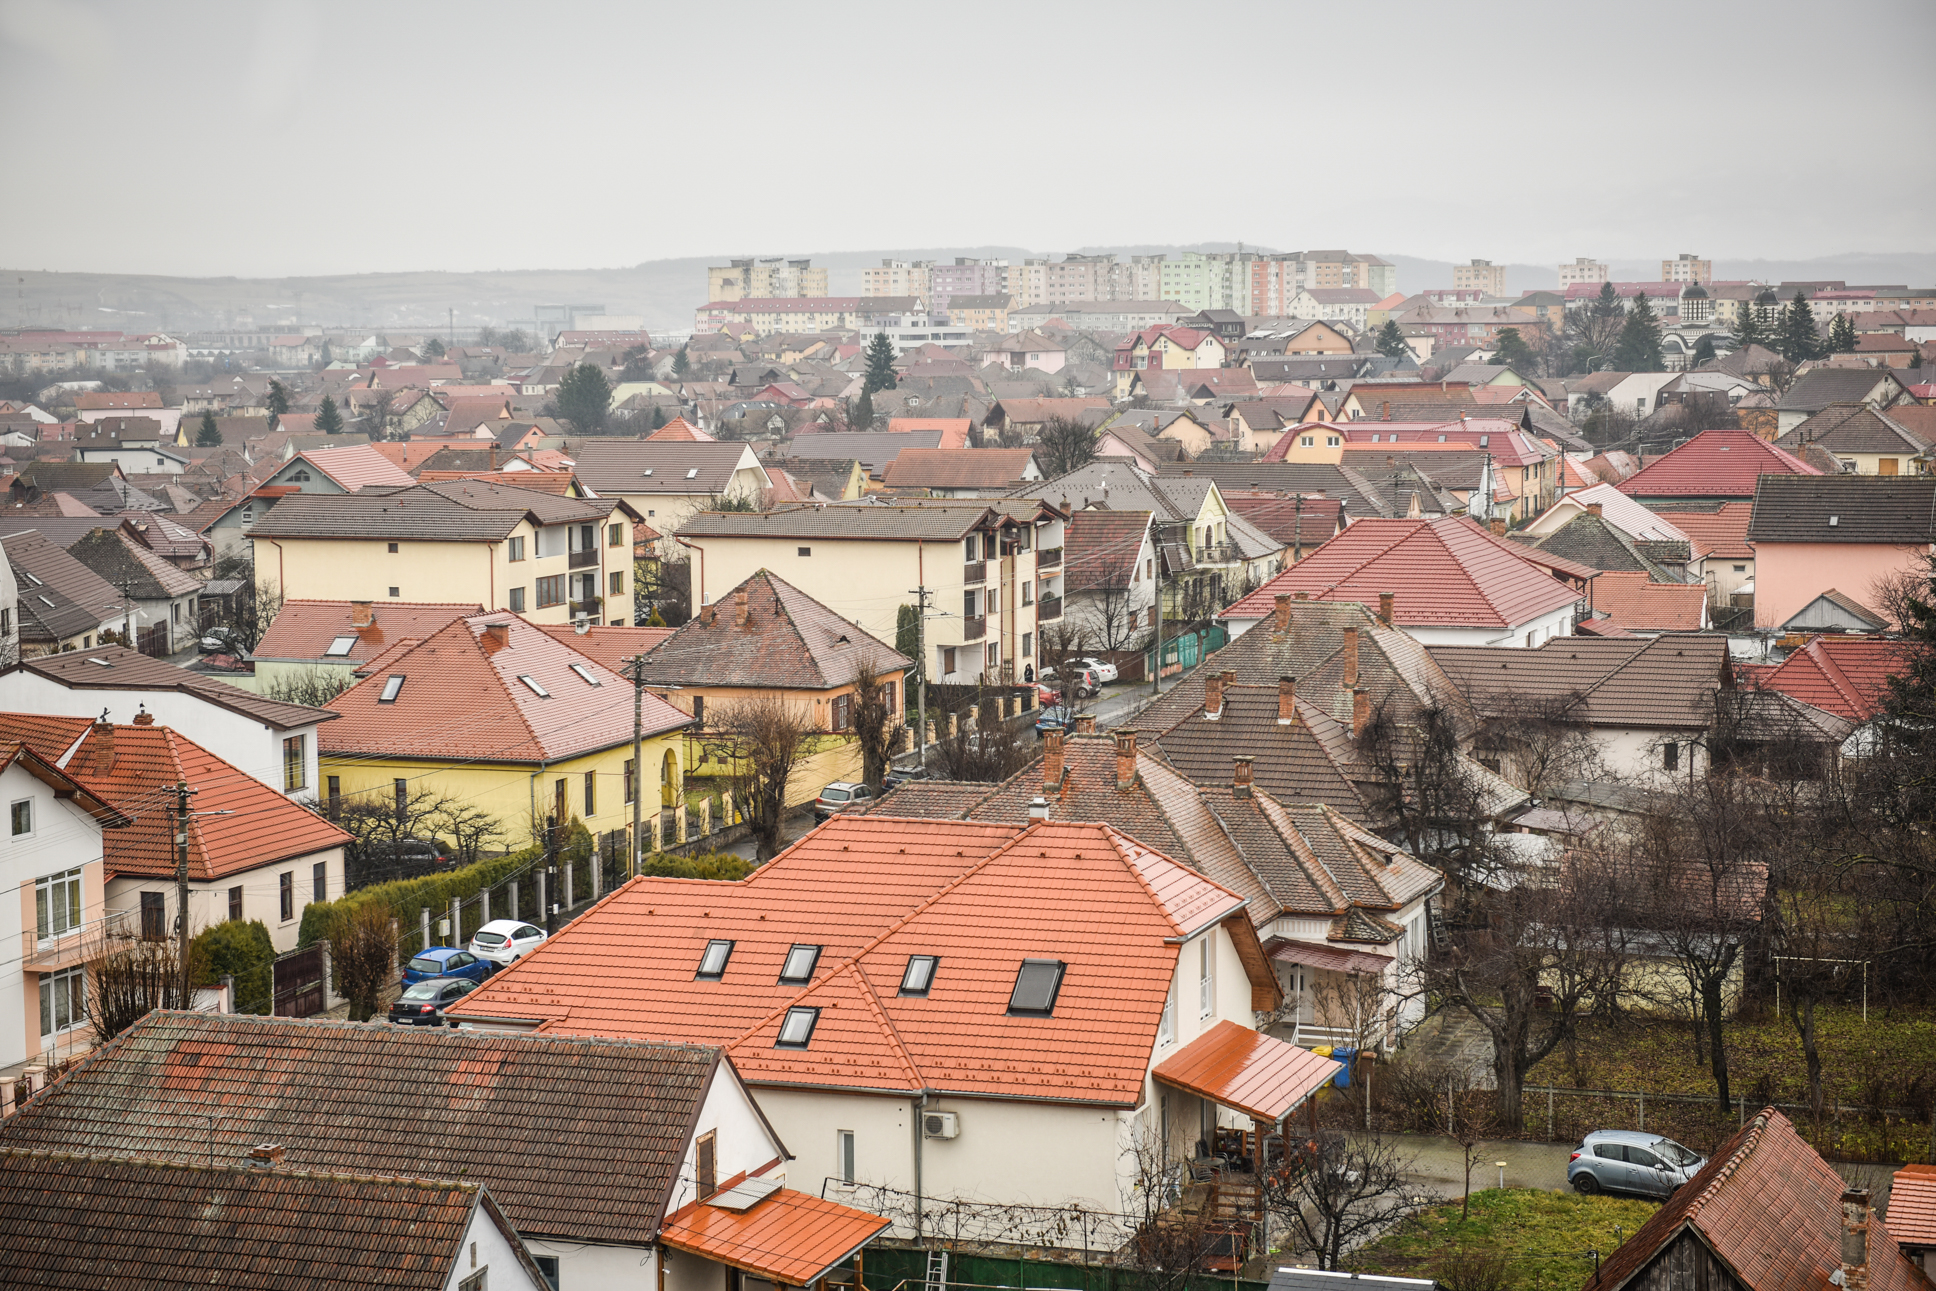 Incidența în Sibiu crește la 33,58. Șelimbărul trece și el de 30 la mie. 26 de localități au peste 10 rată de infectare